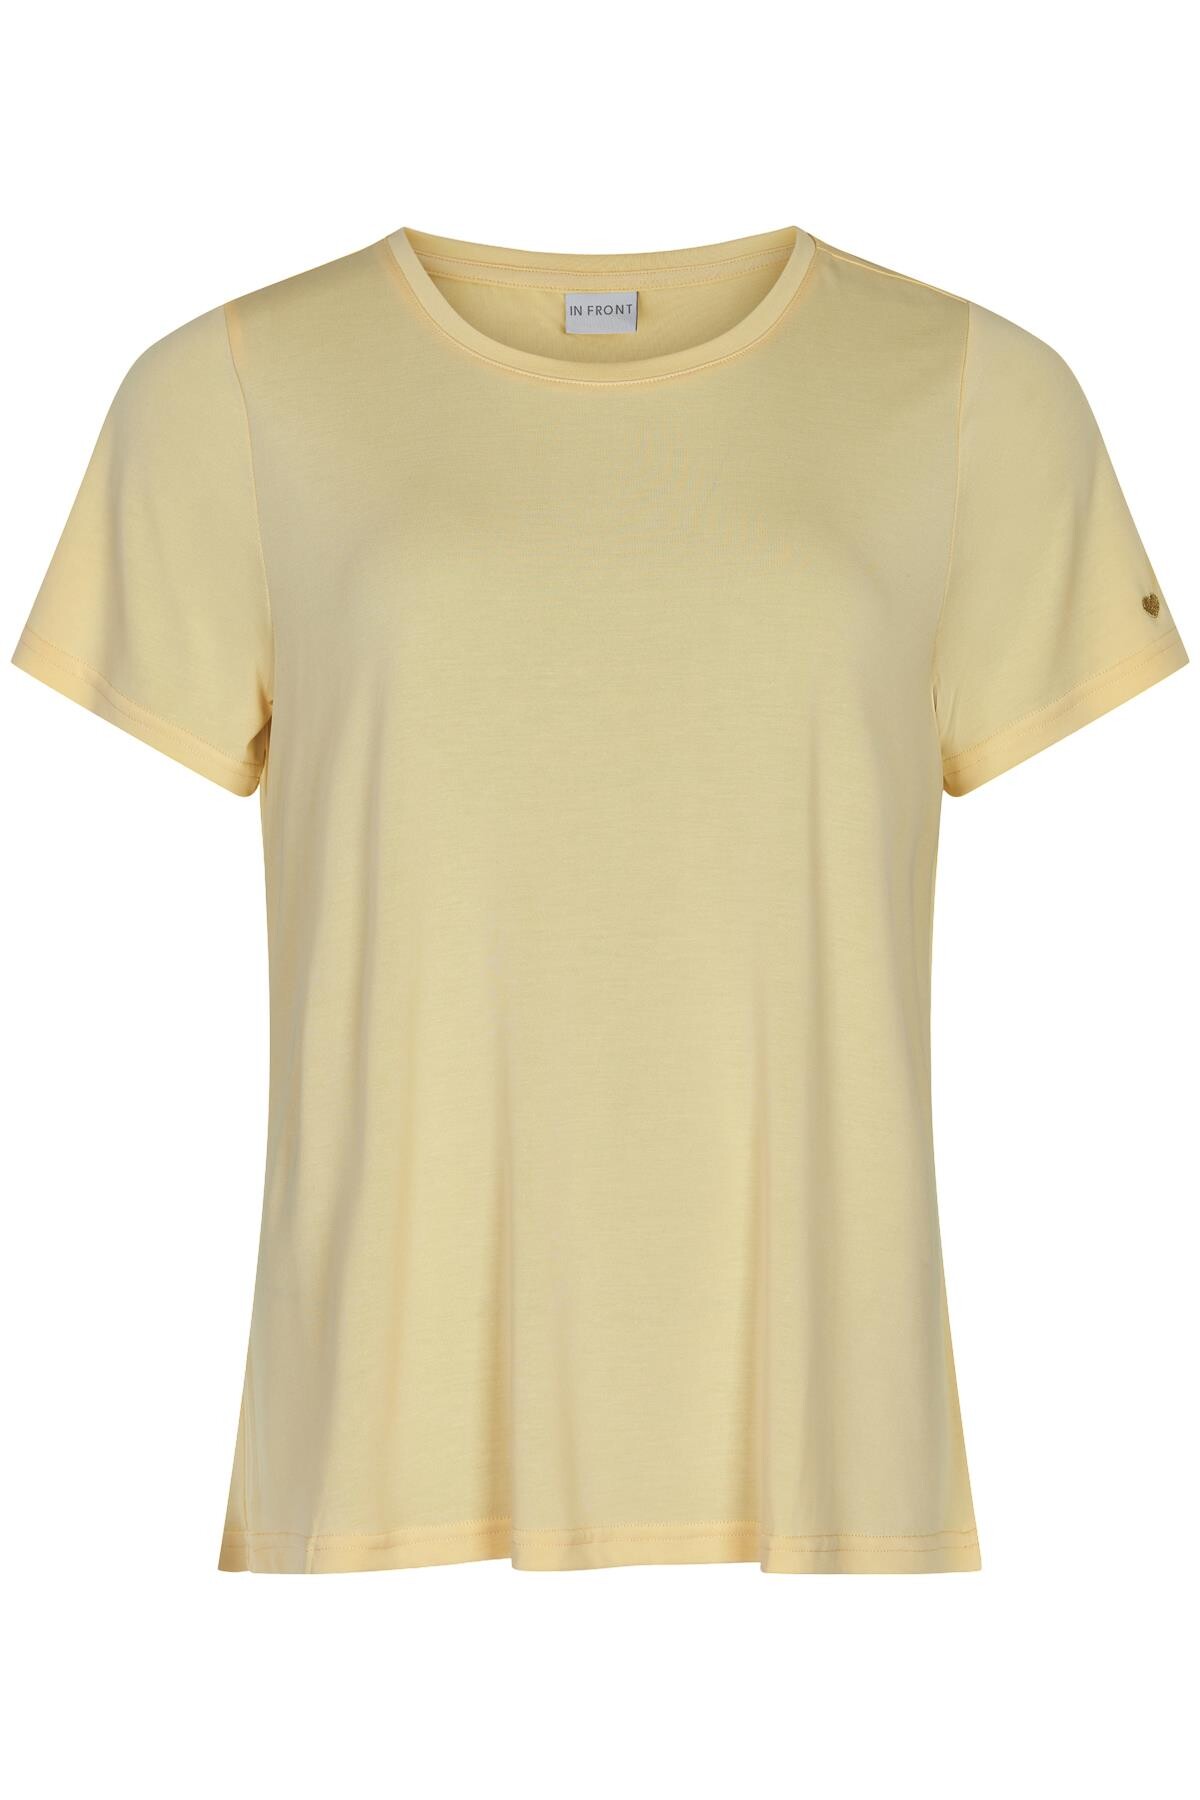 IN FRONT Nina T-shirt, Farve: Light Yellow, Størrelse: XXL, Dame